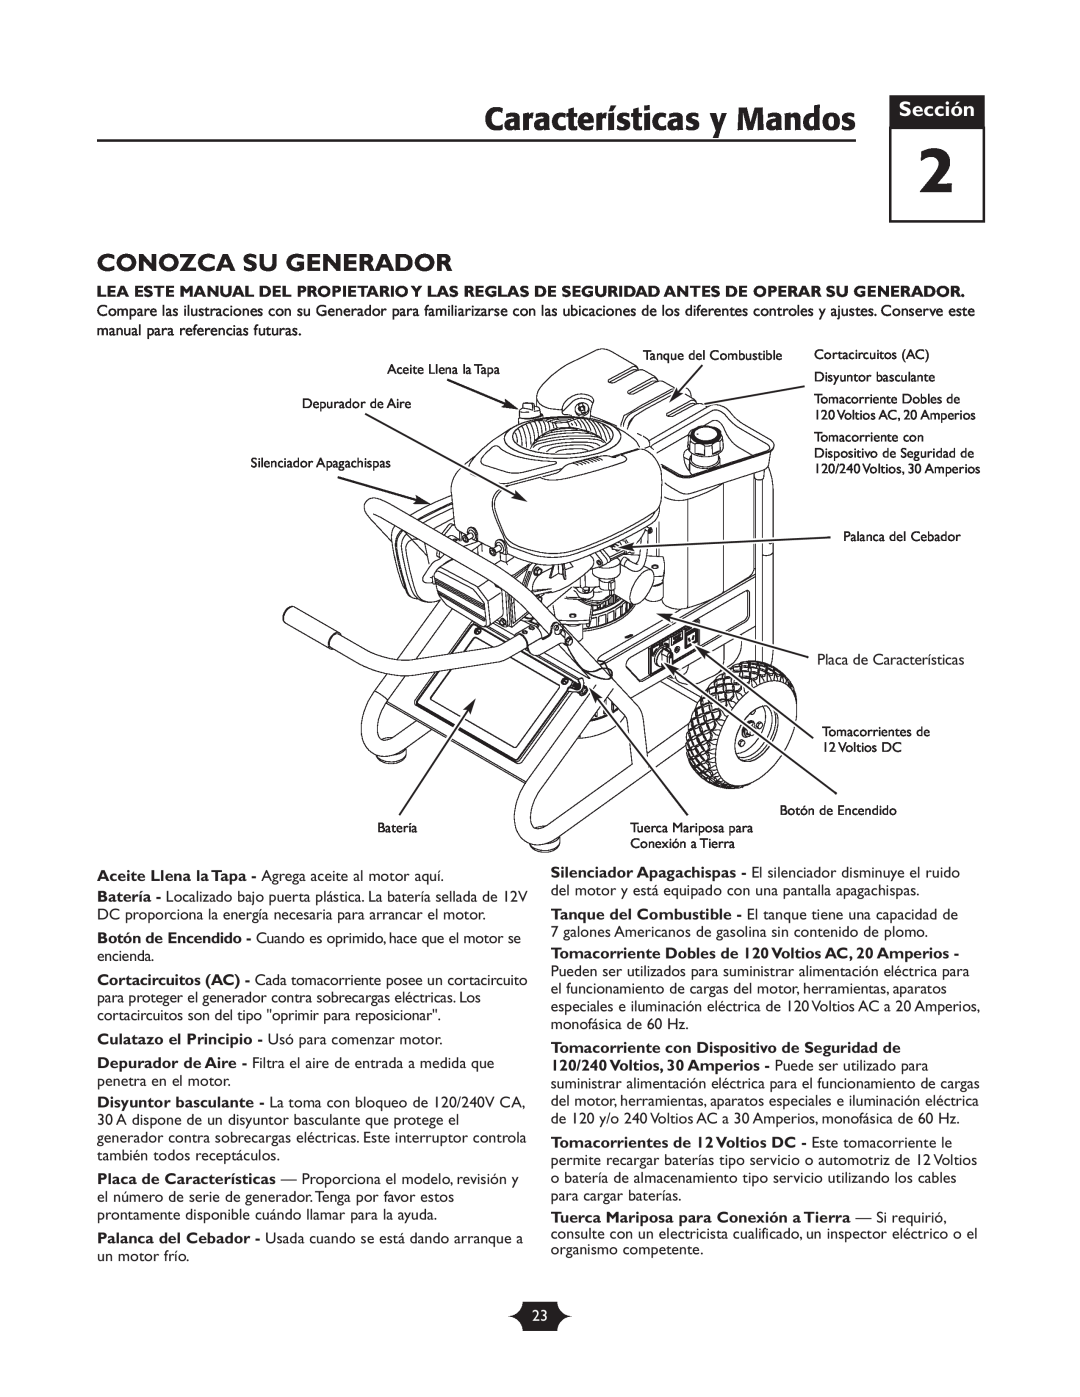 Briggs & Stratton 30237 owner manual Características y Mandos, Conozca Su Generador, Sección 